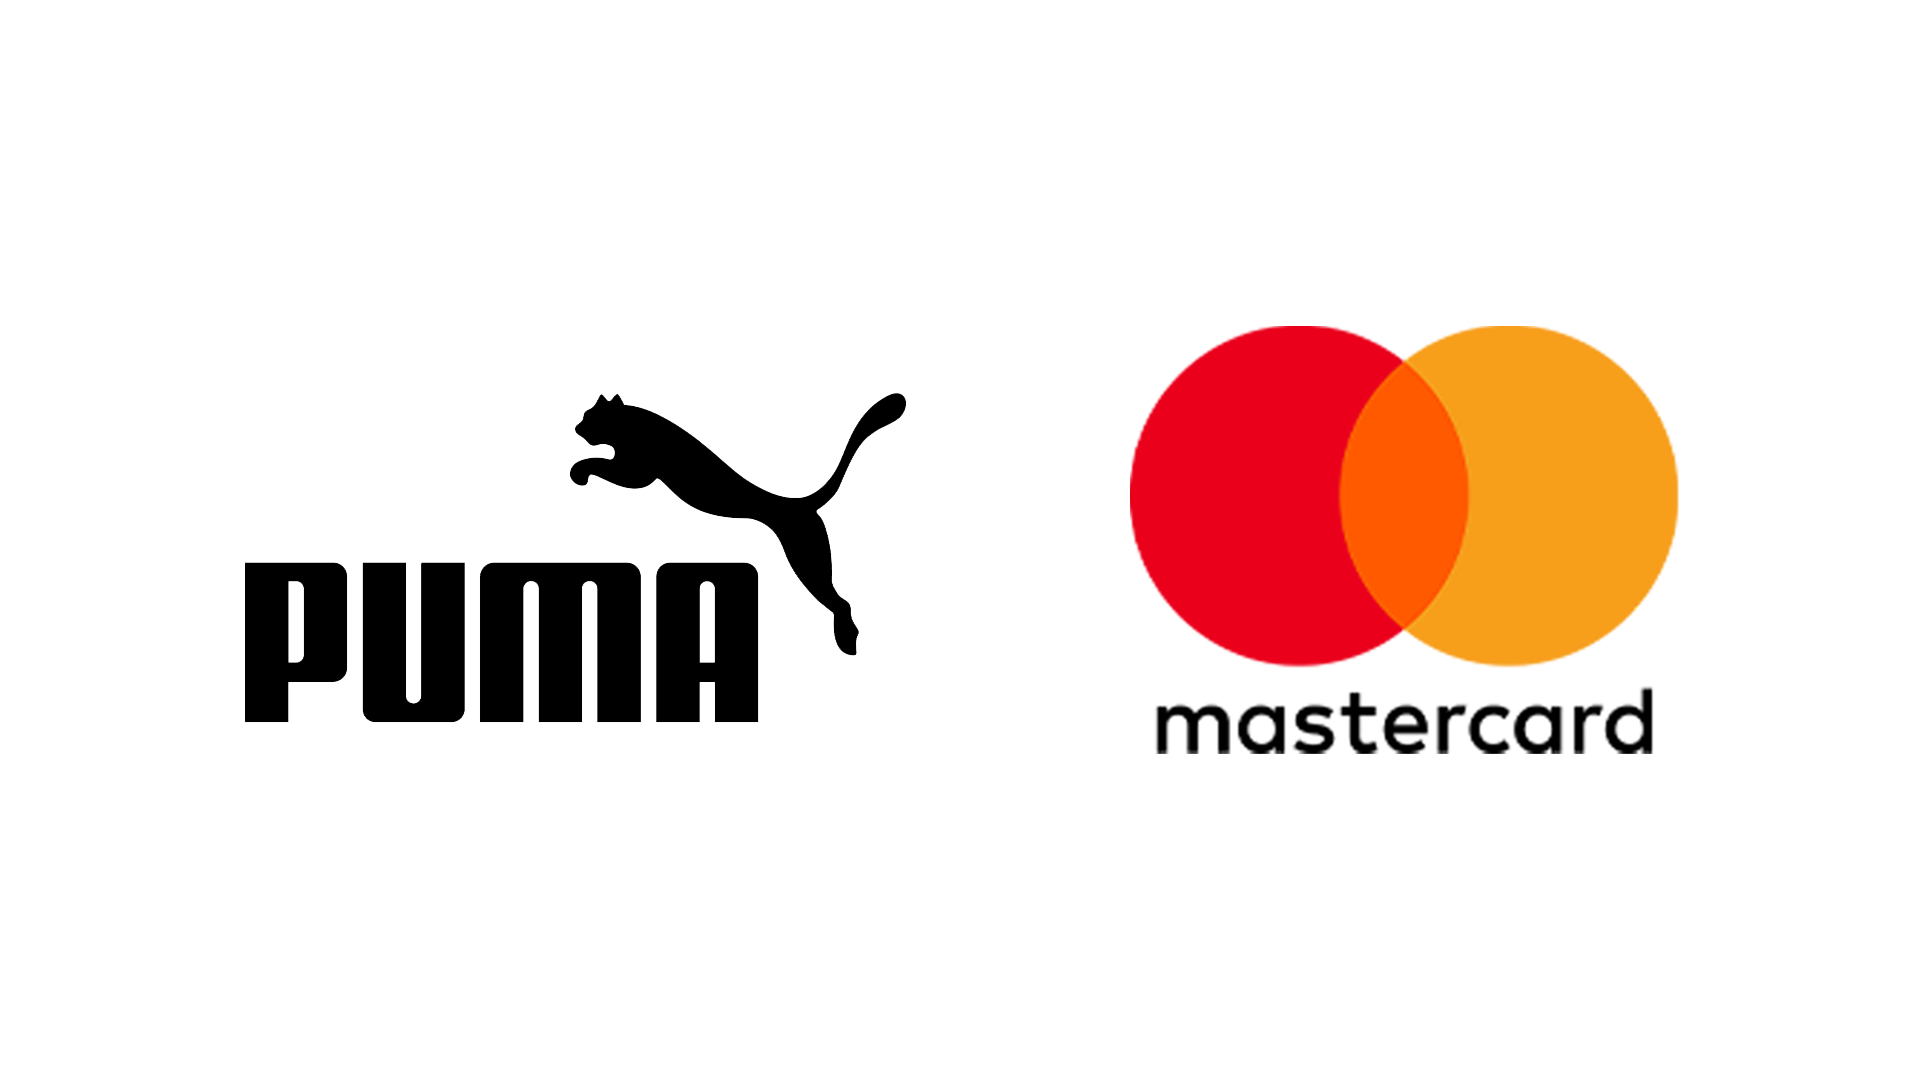 The logos of Puma and Mastercard